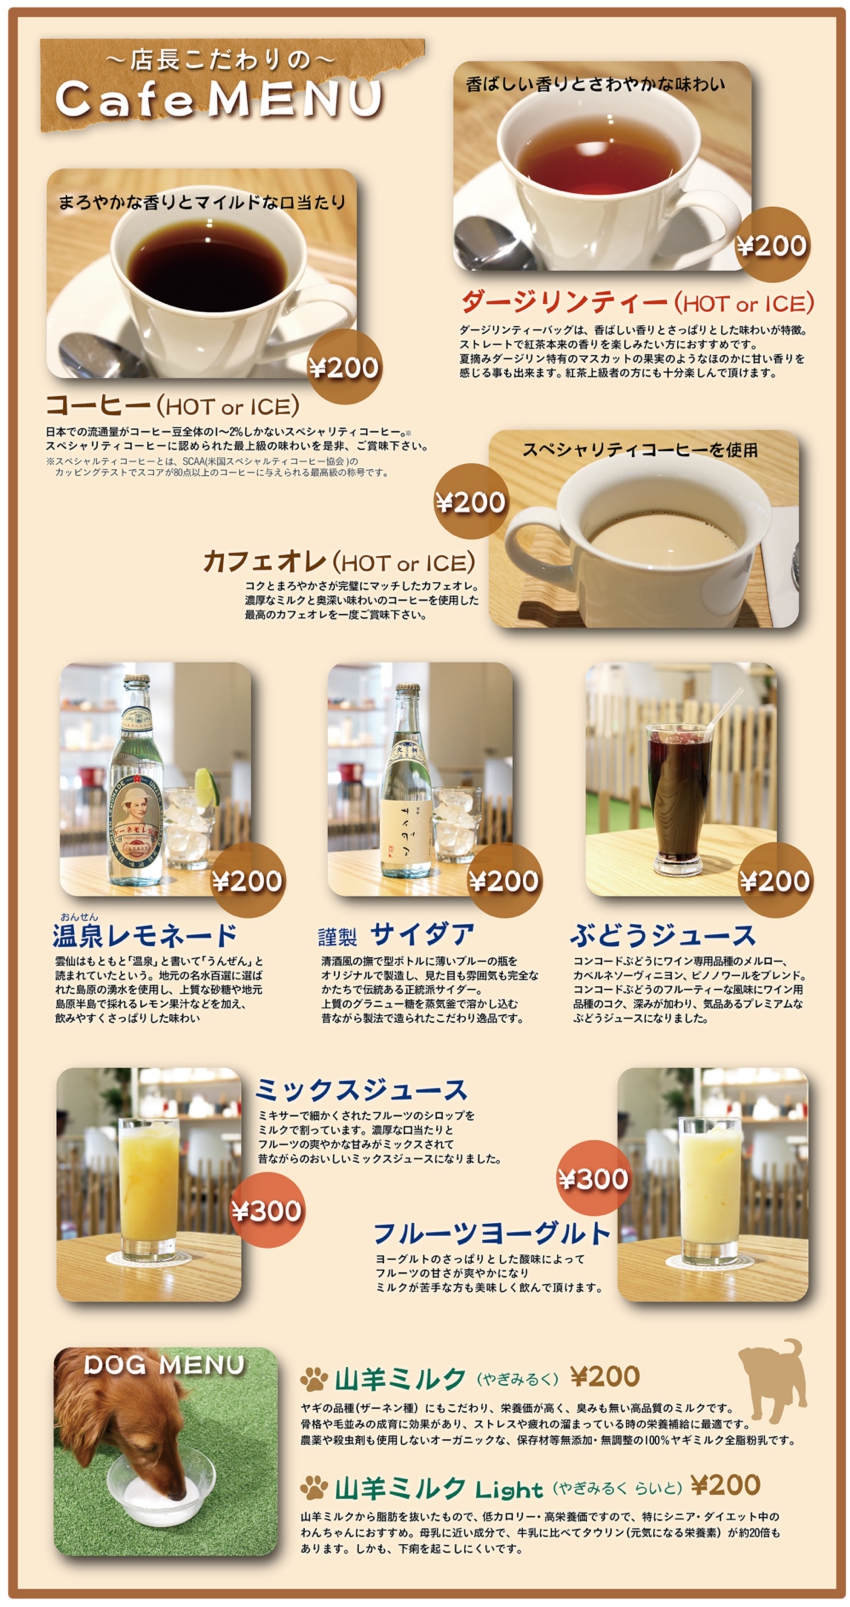 CAFEmenu_04_201510.jpg